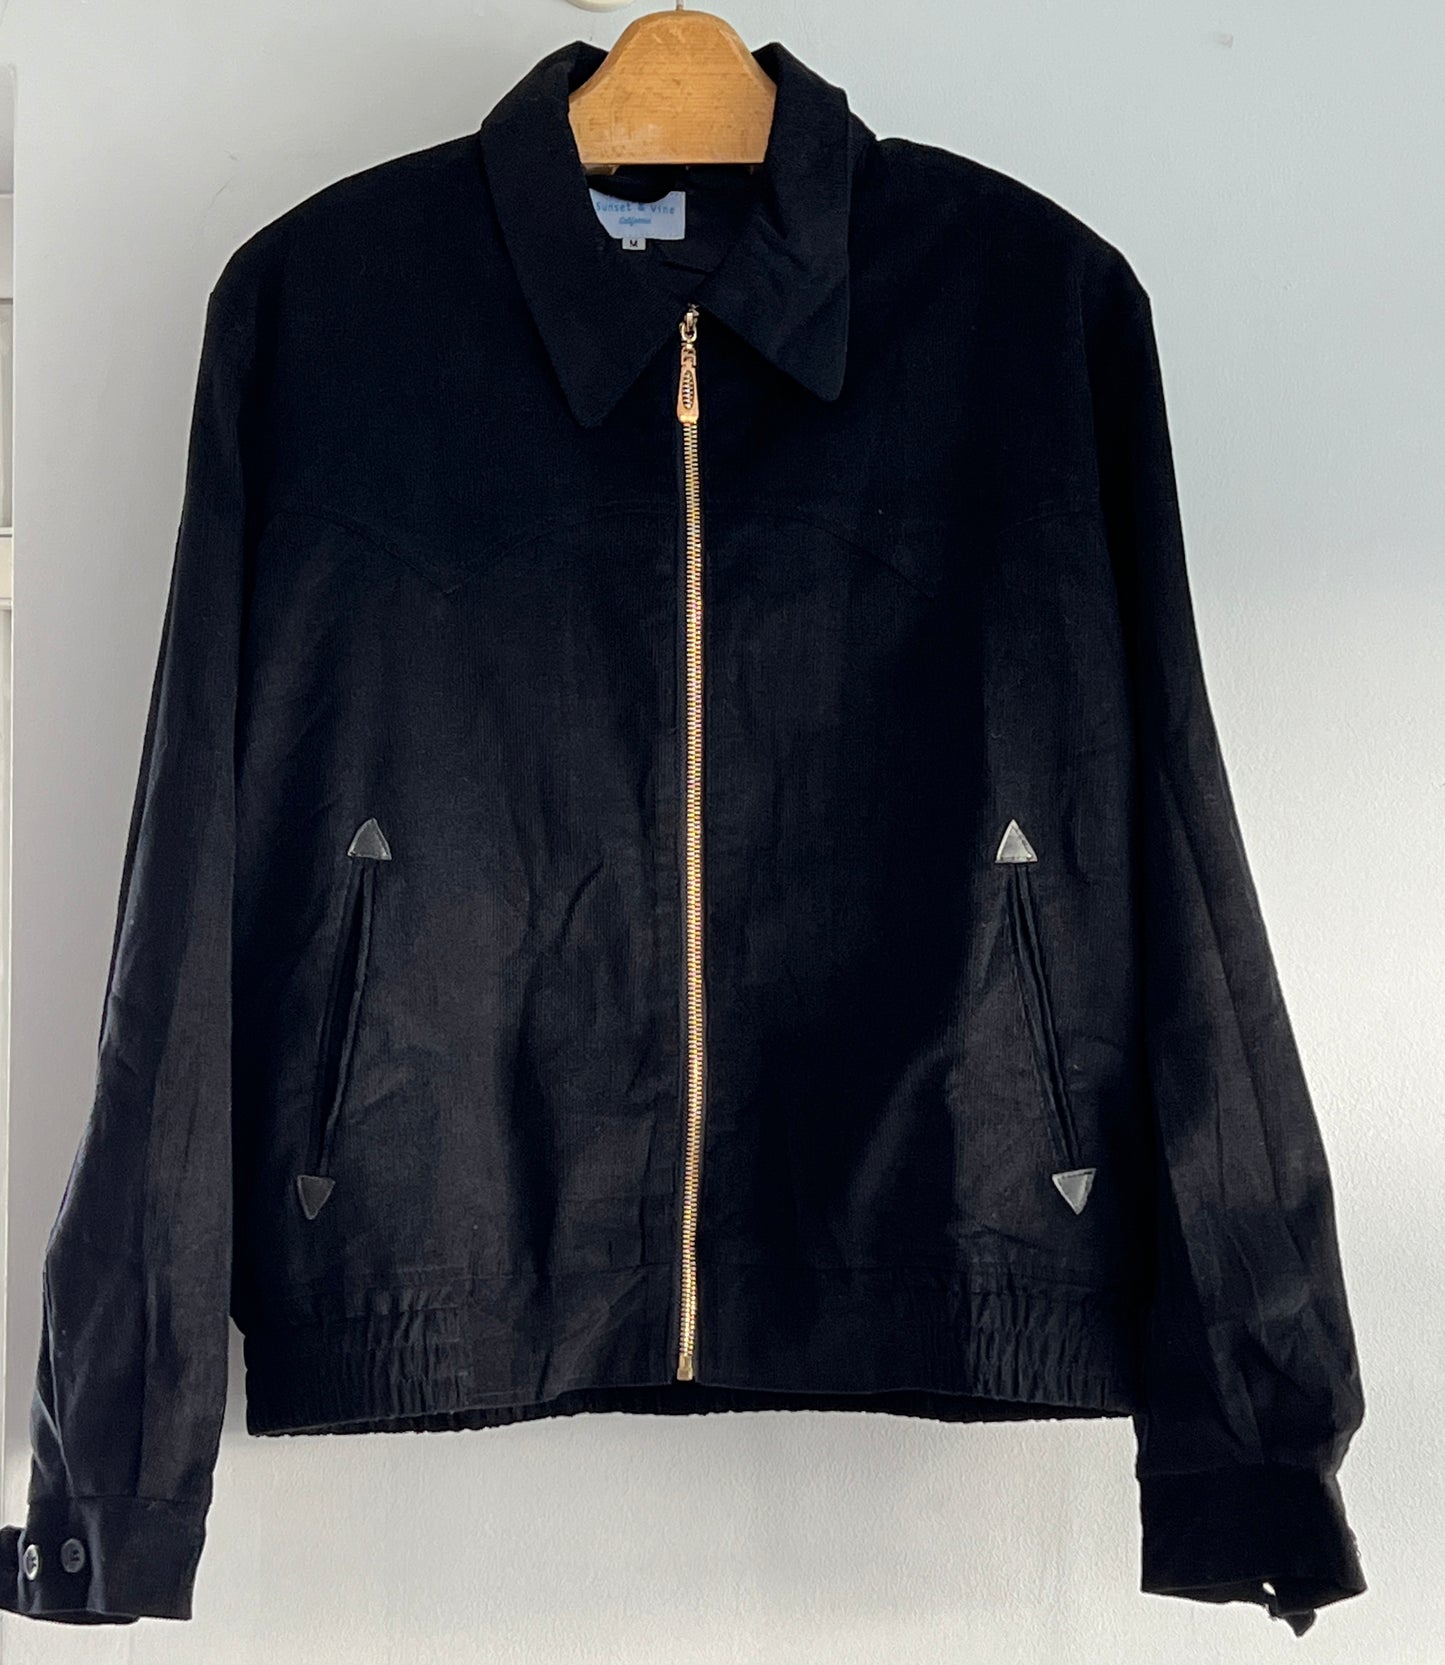 Mens 1950s vintage style Western cut gab jacket in black corduroy M to 2XL